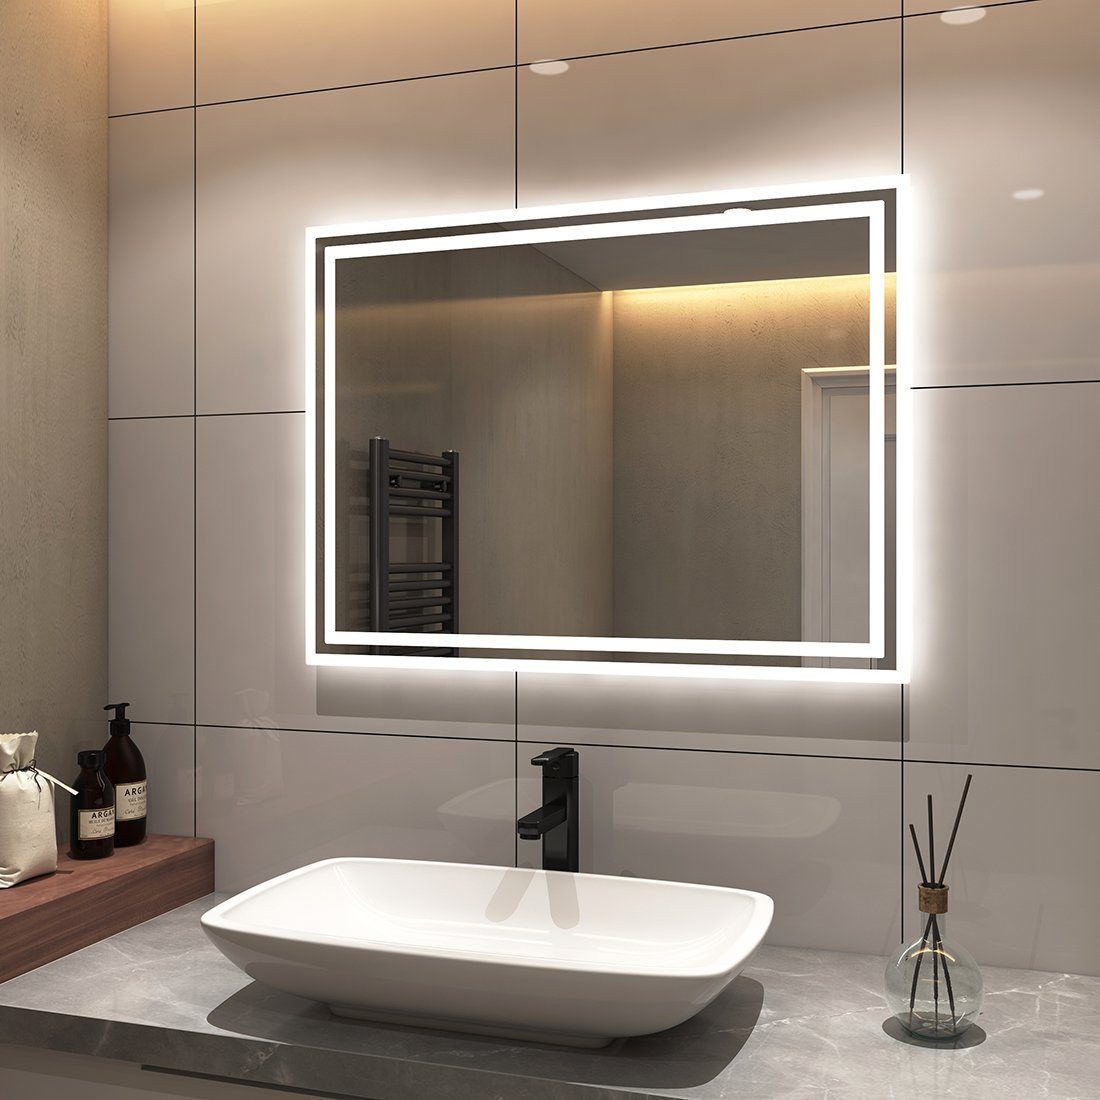 LED Druckknopfschalter, S'AFIELINA mit Wandmontage, Badspiegel Badspiegel Lichtfarben,Energiesparend, IP44 Beleuchtung, Badspiegel mit Beschlagfrei,2